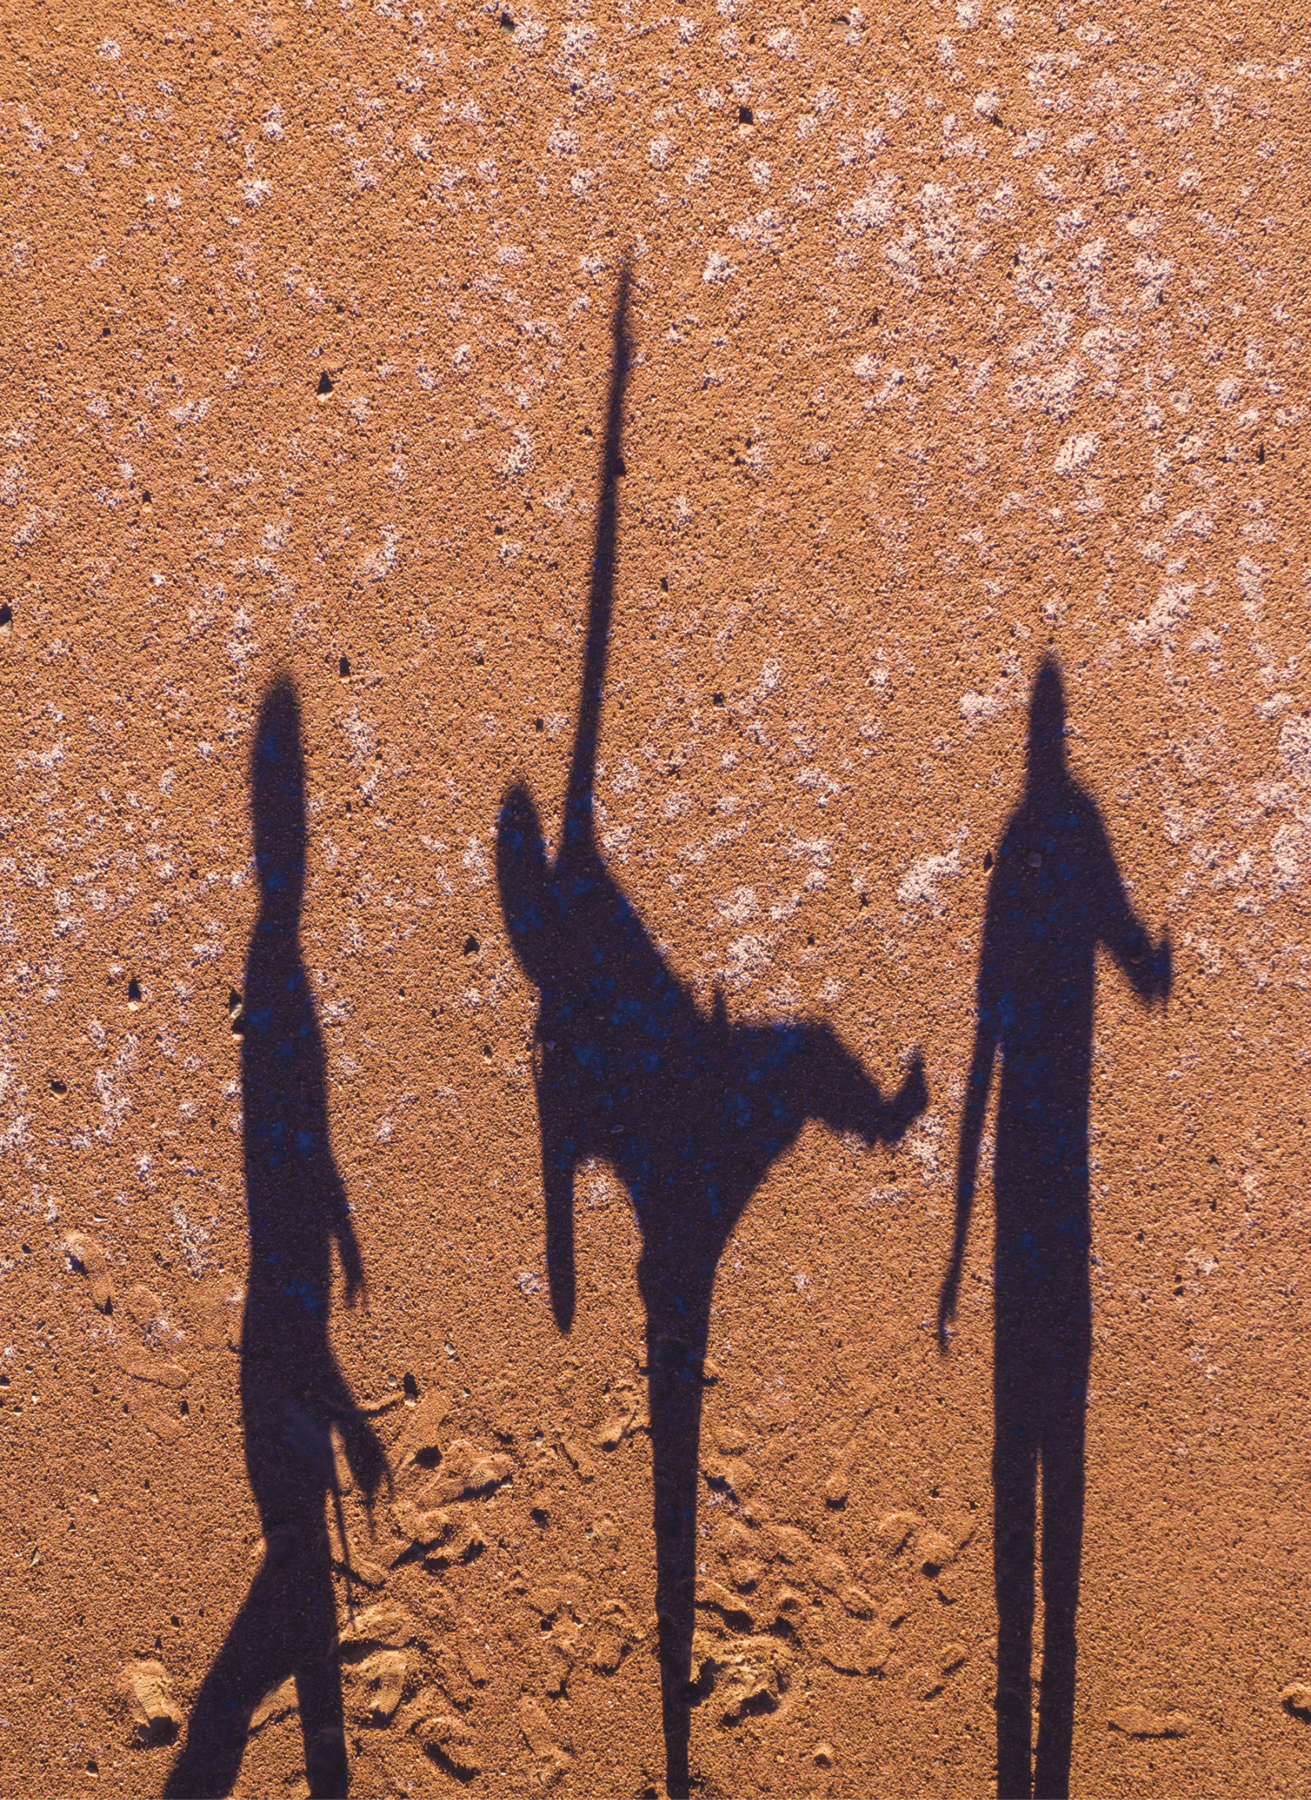 Fotografia. Sombras de três pessoas em movimento sobre um chão de areia.